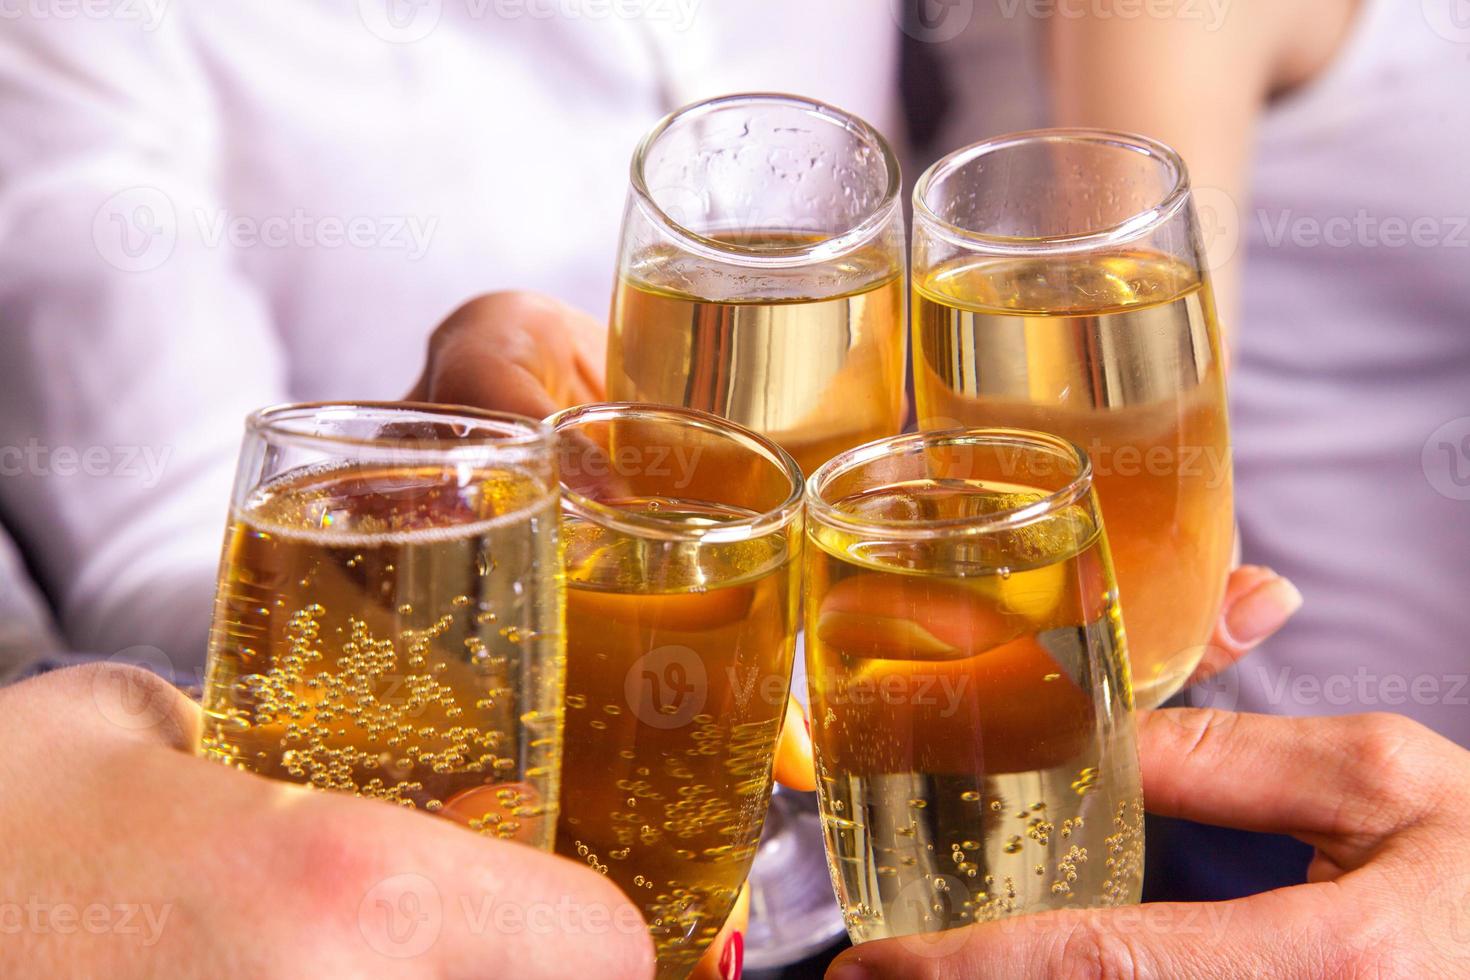 comemorar e tilintar taças com champanhe foto